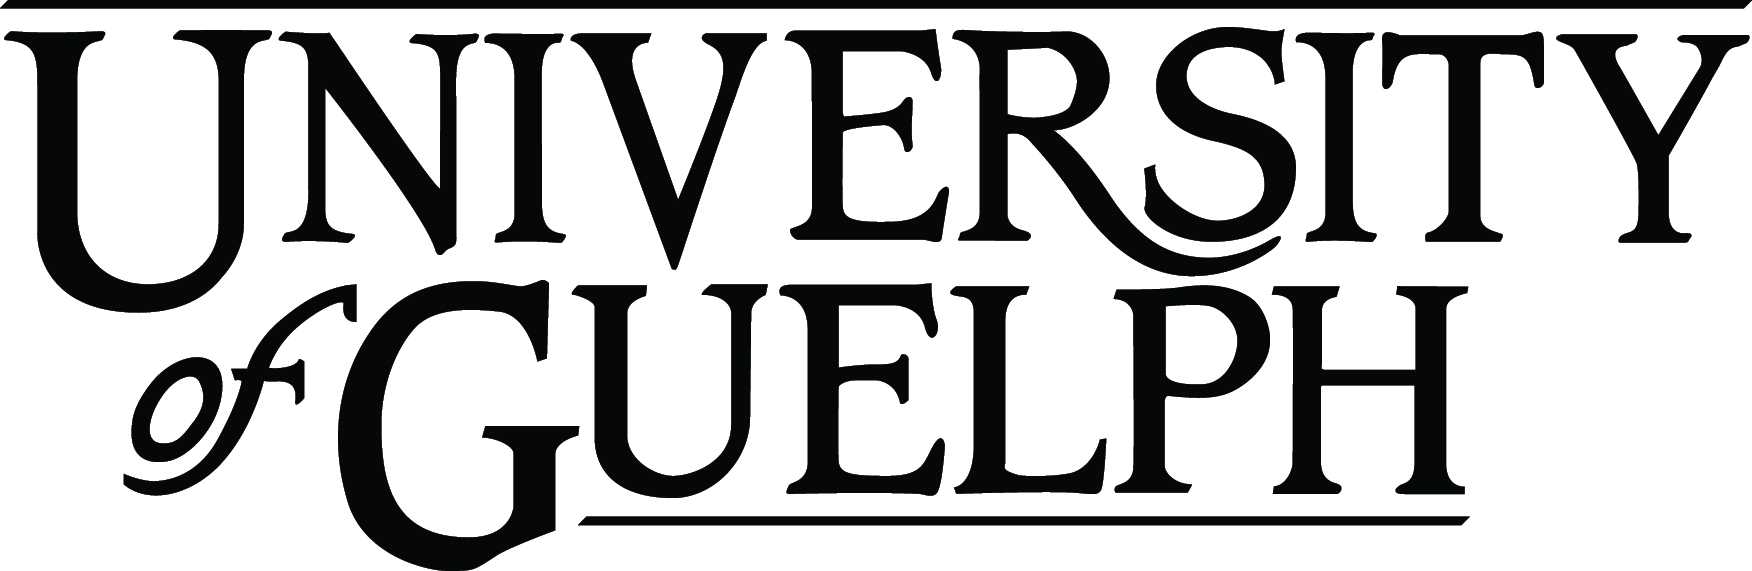 University of Guelph logo.